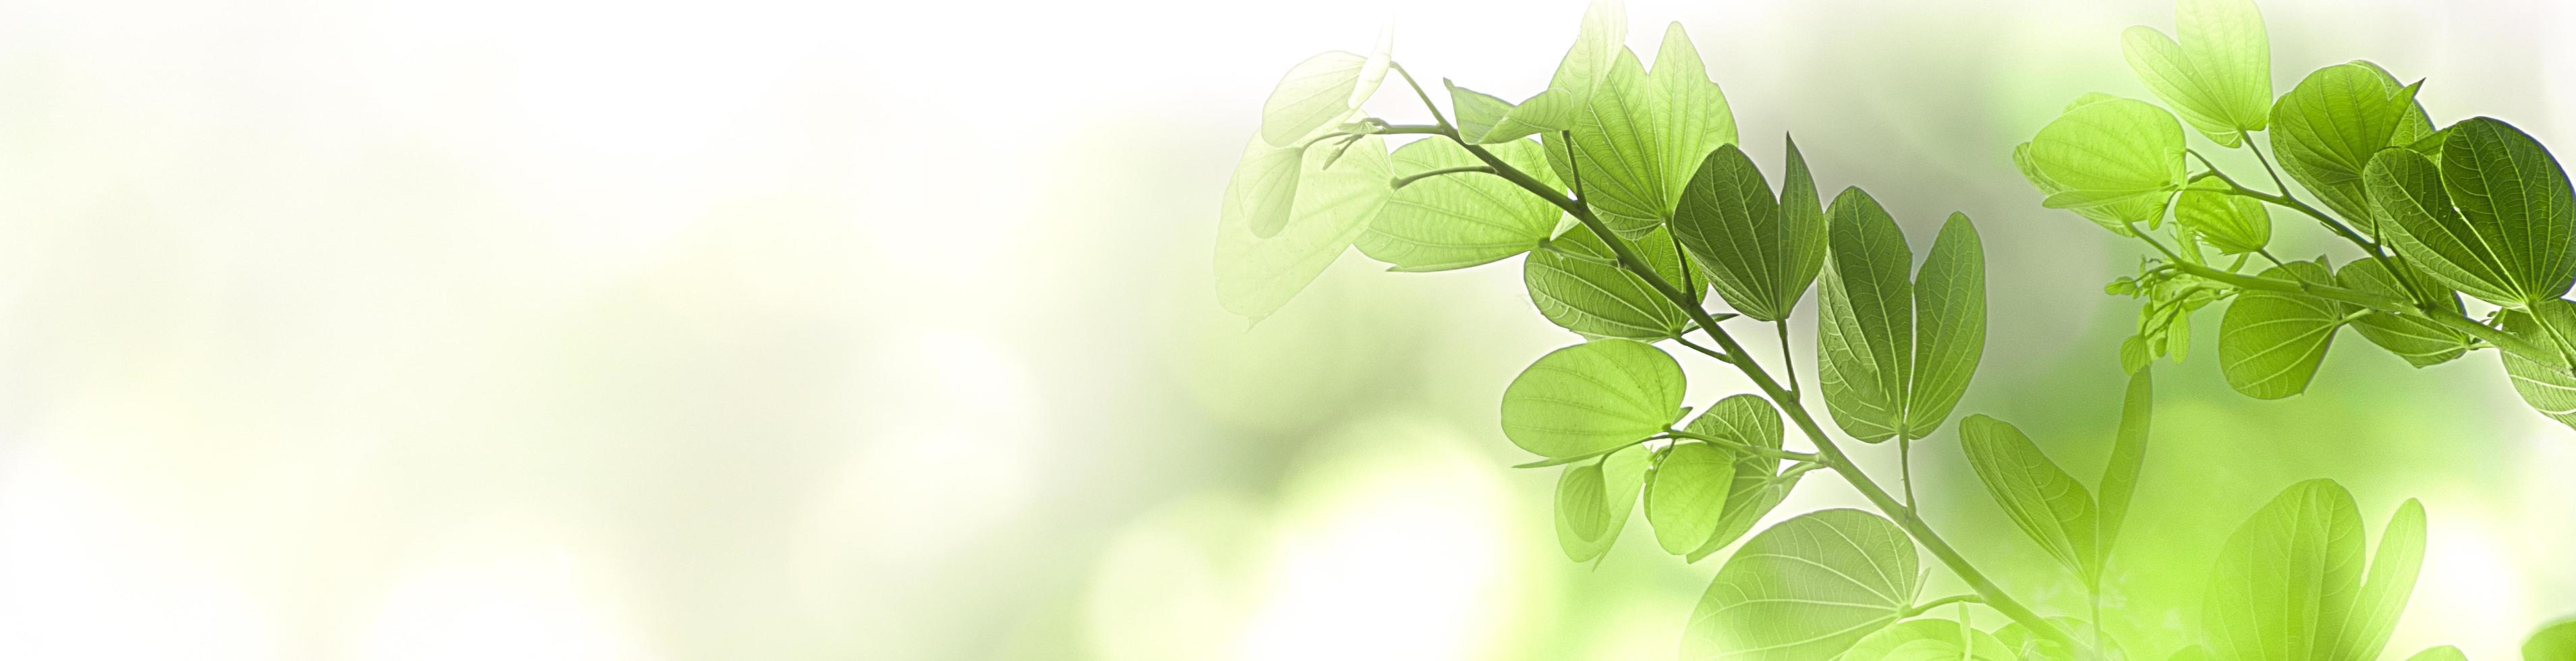 natura albero verde foglia fresca su bellissimo sfondo sfocato morbido bokeh luce solare con spazio copia gratuita, copertina primavera estate o ambiente, modello, banner web e intestazione. foto